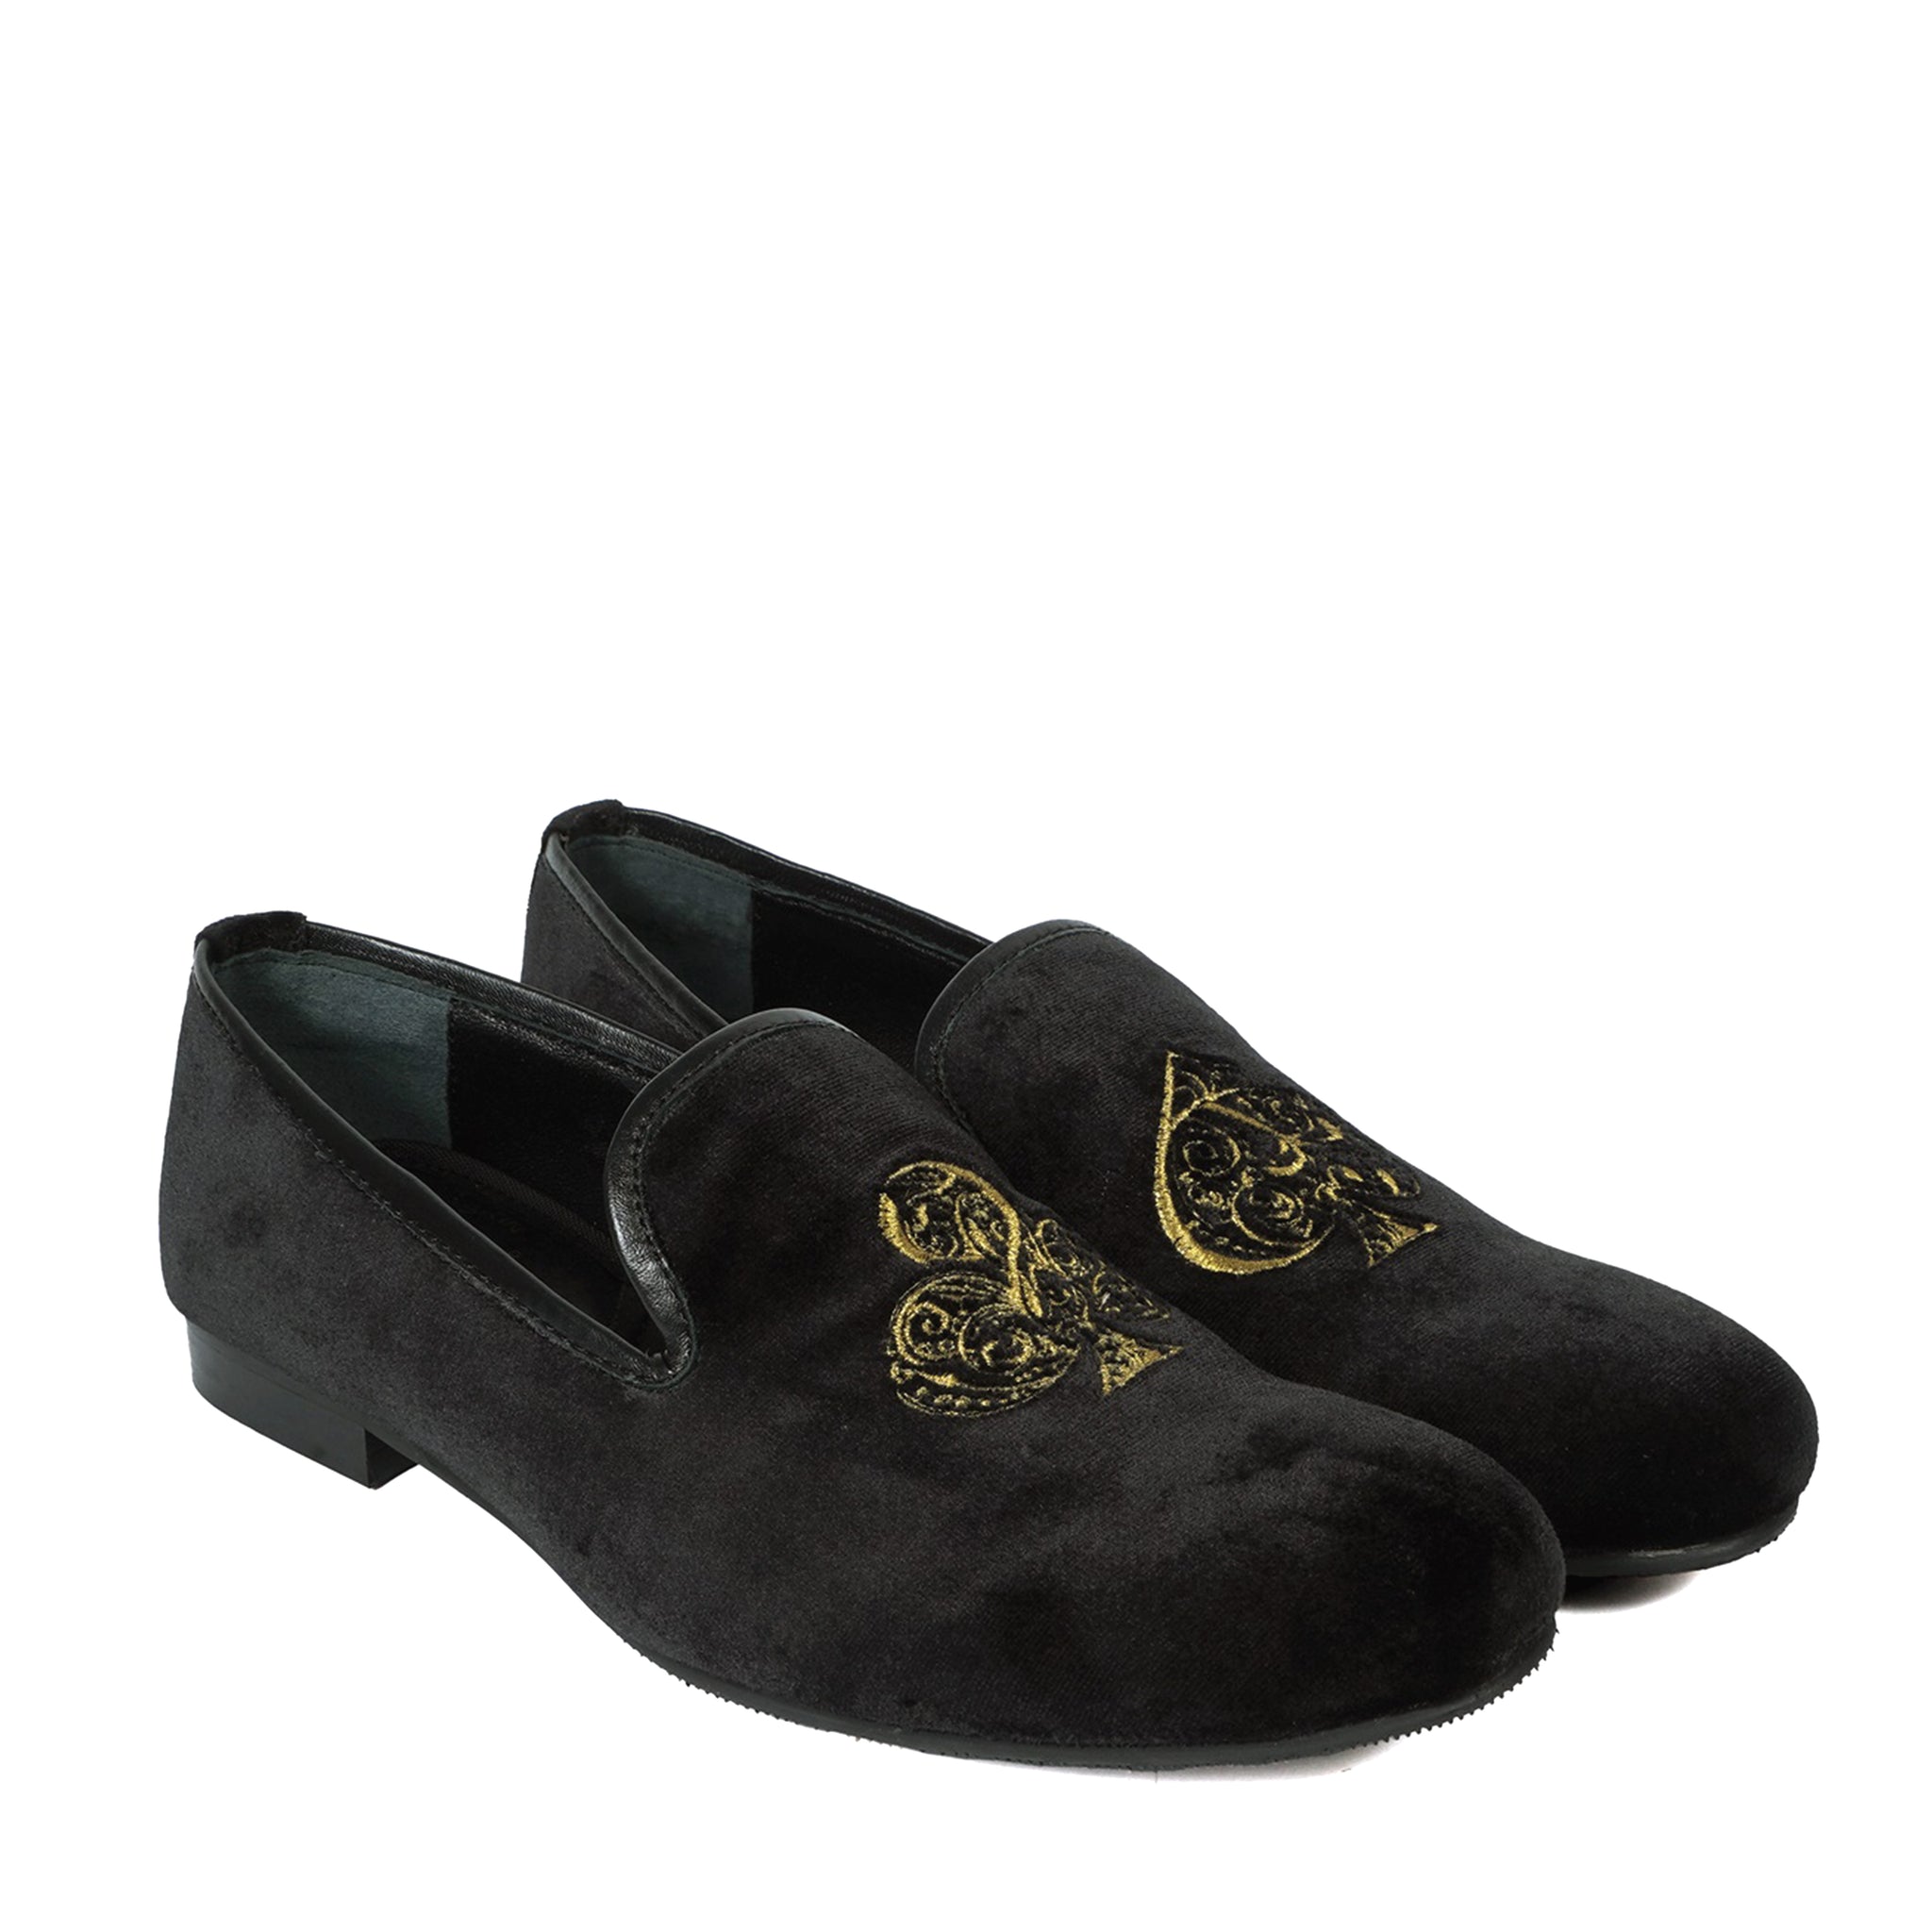 Embroidered Velvet Slip-On Shoes with Black-Golden Poker Detailing